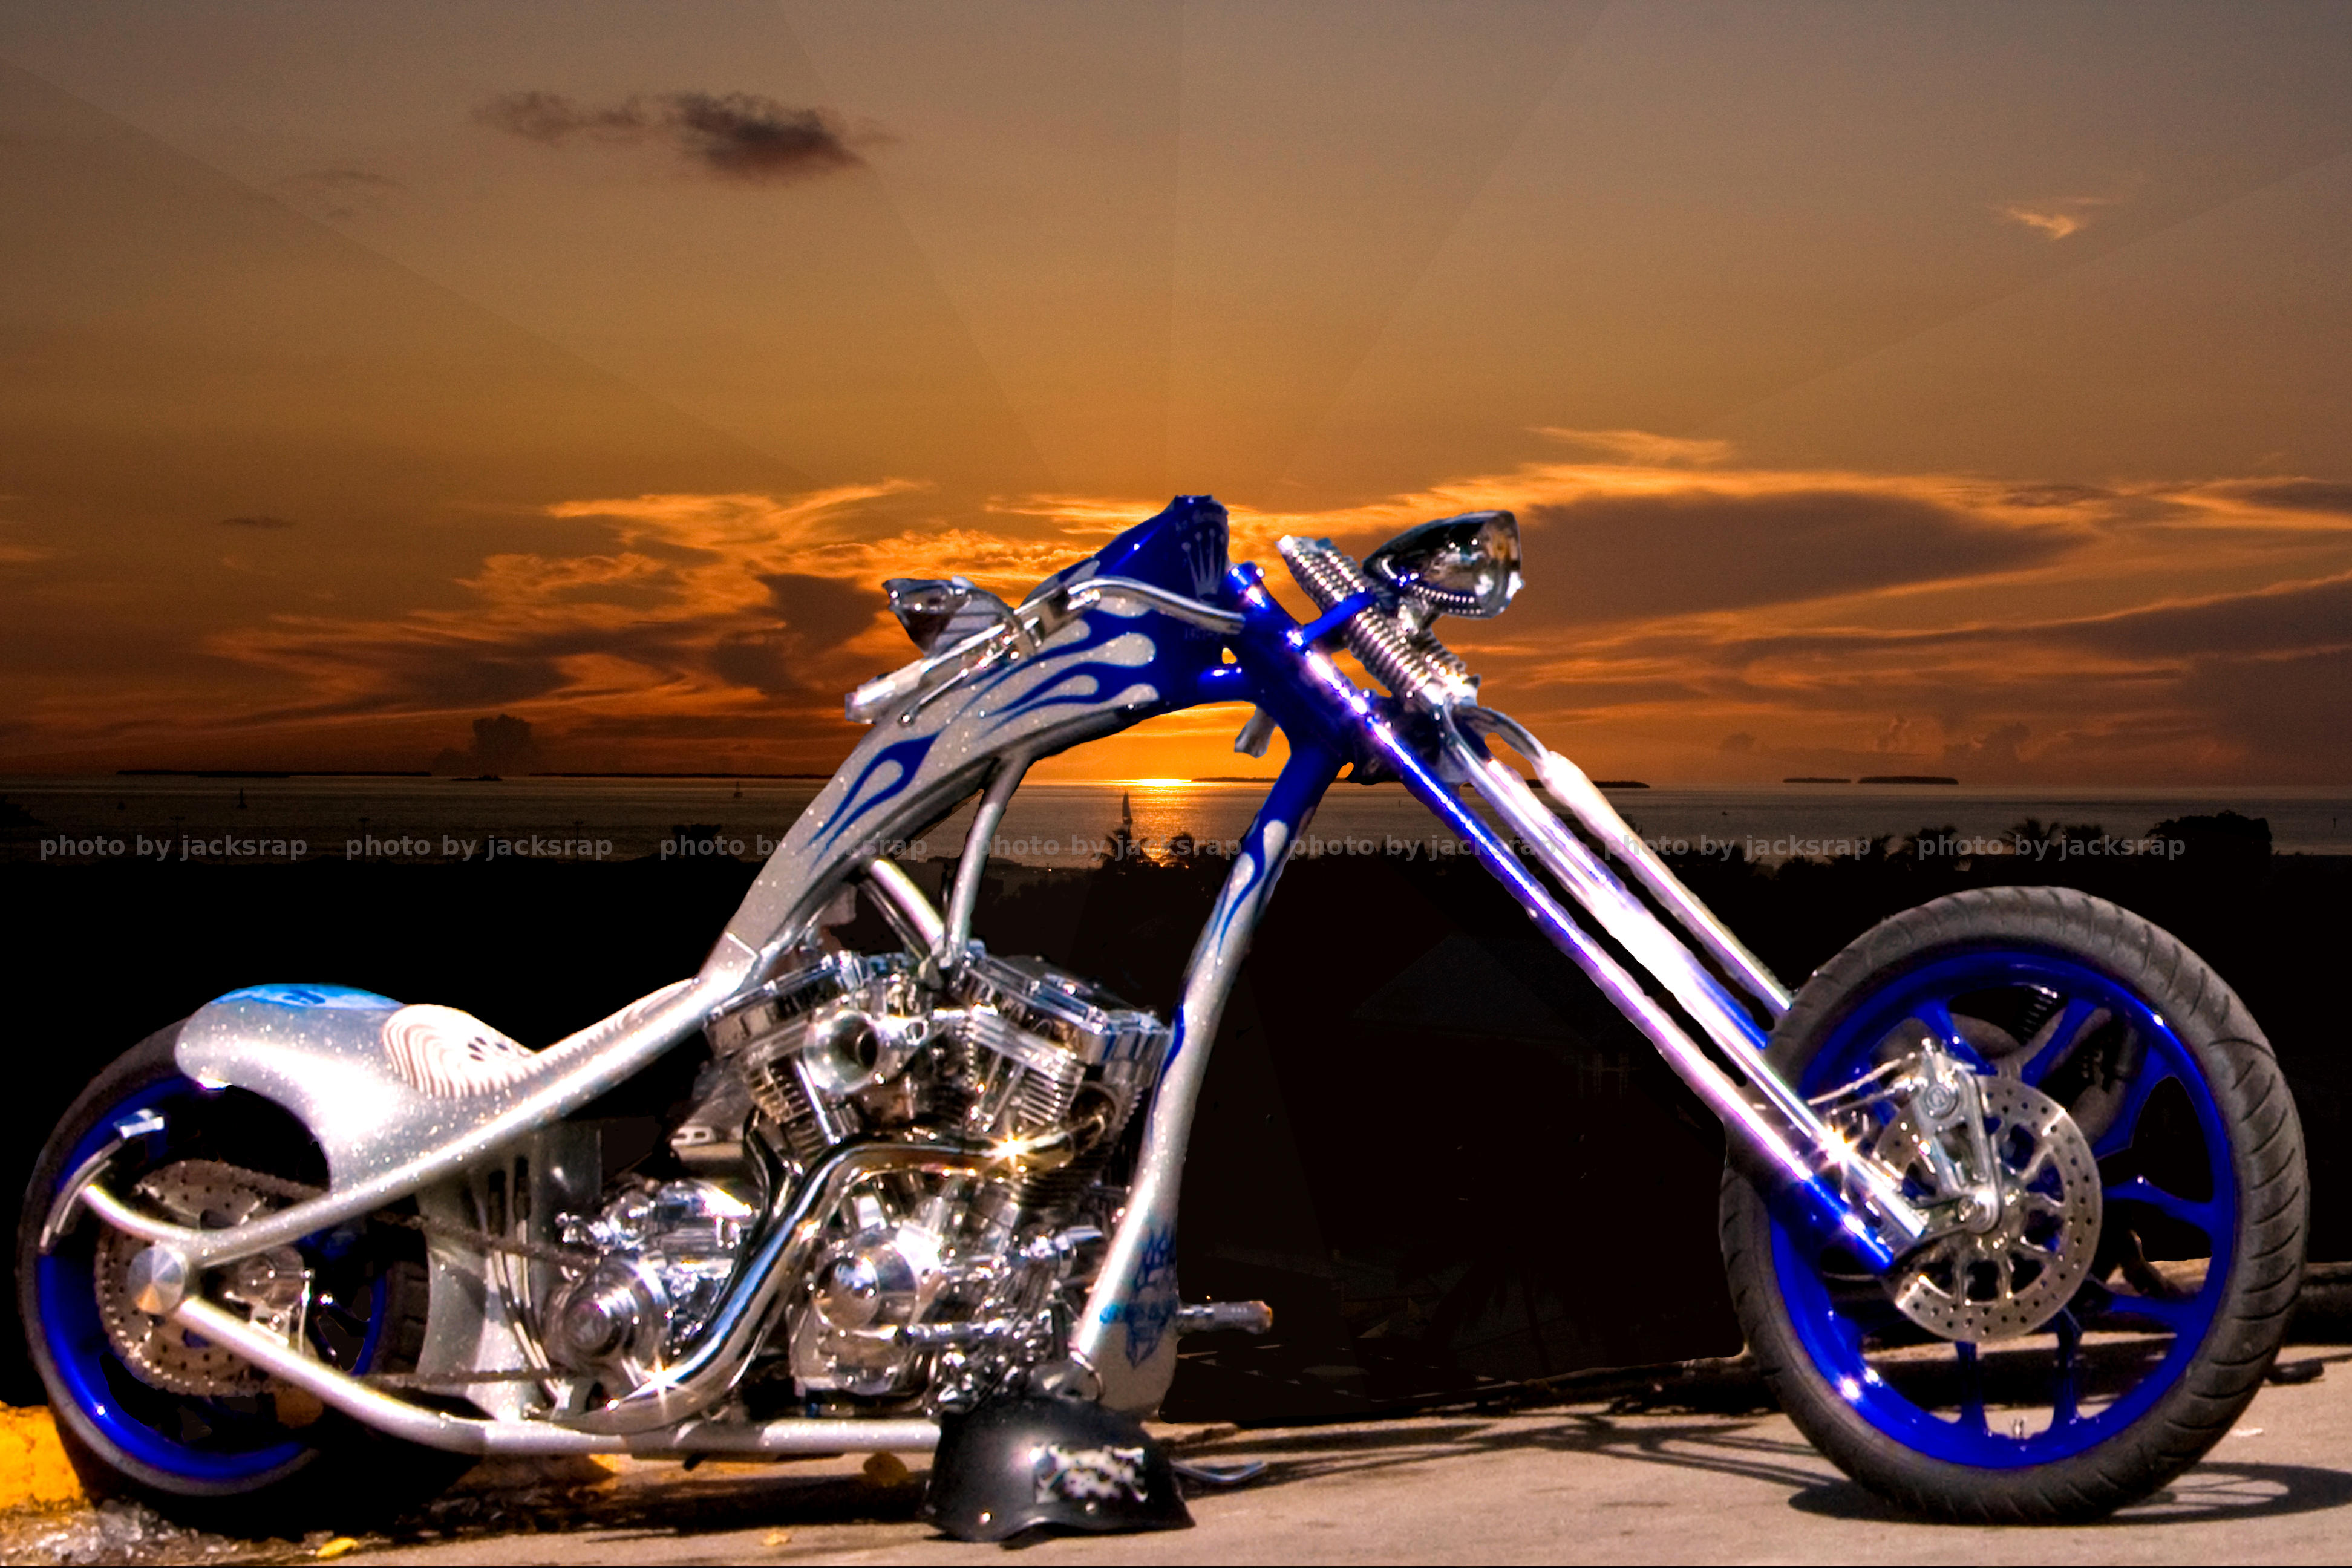 blue-custom-bike-at-sunset-by-jacksrap1.jpg